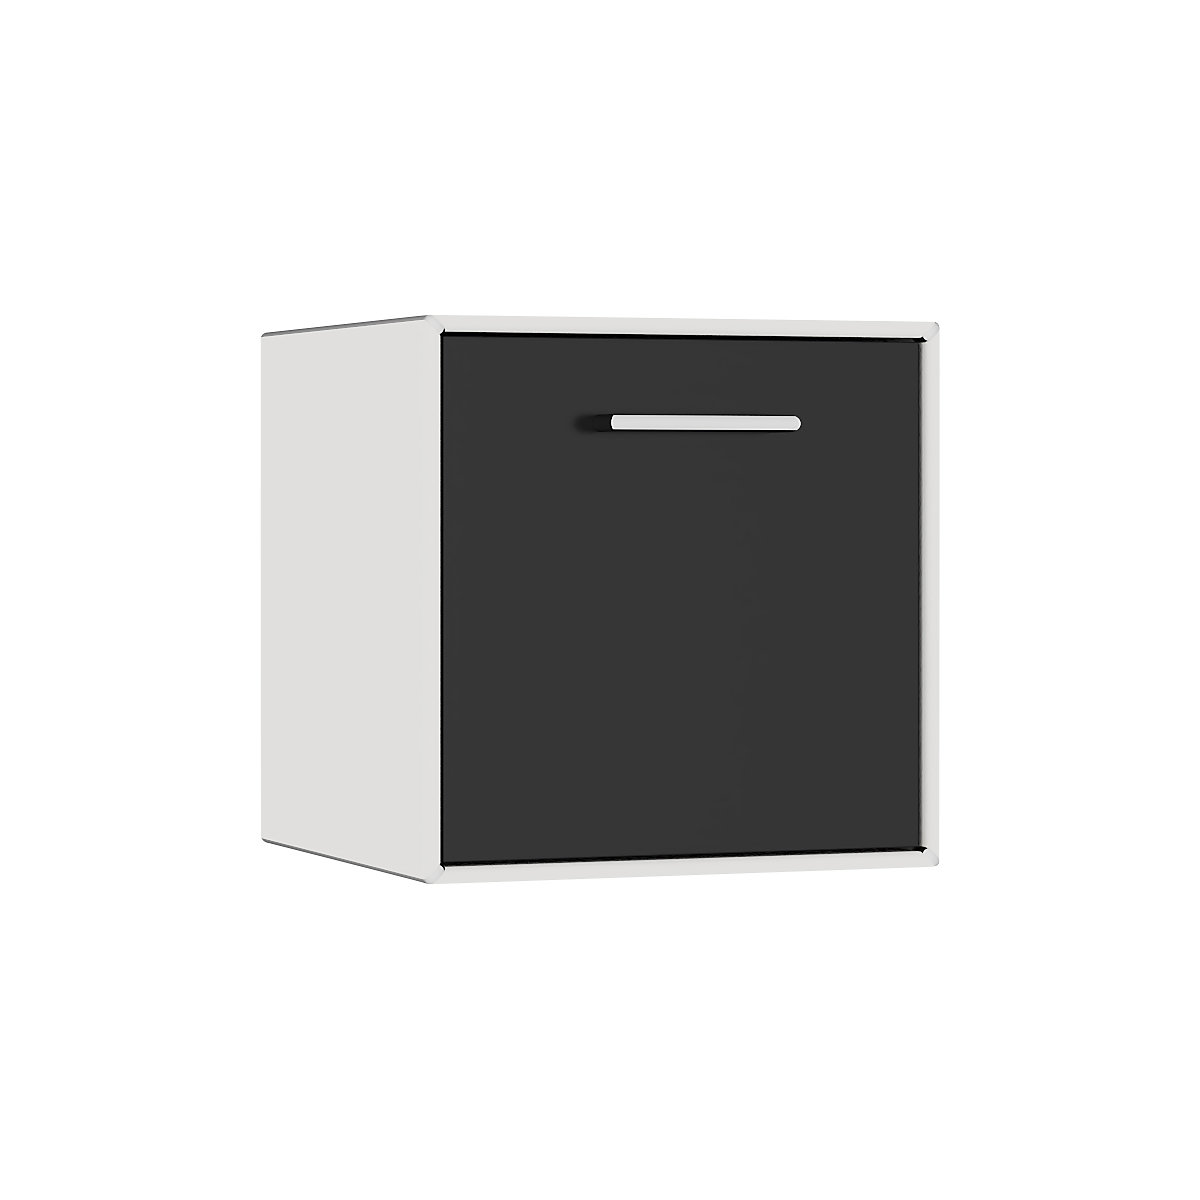 mauser – Cuie individuală, suspendată, 1 sertar, lățime 385 mm, alb semnal / negru intens